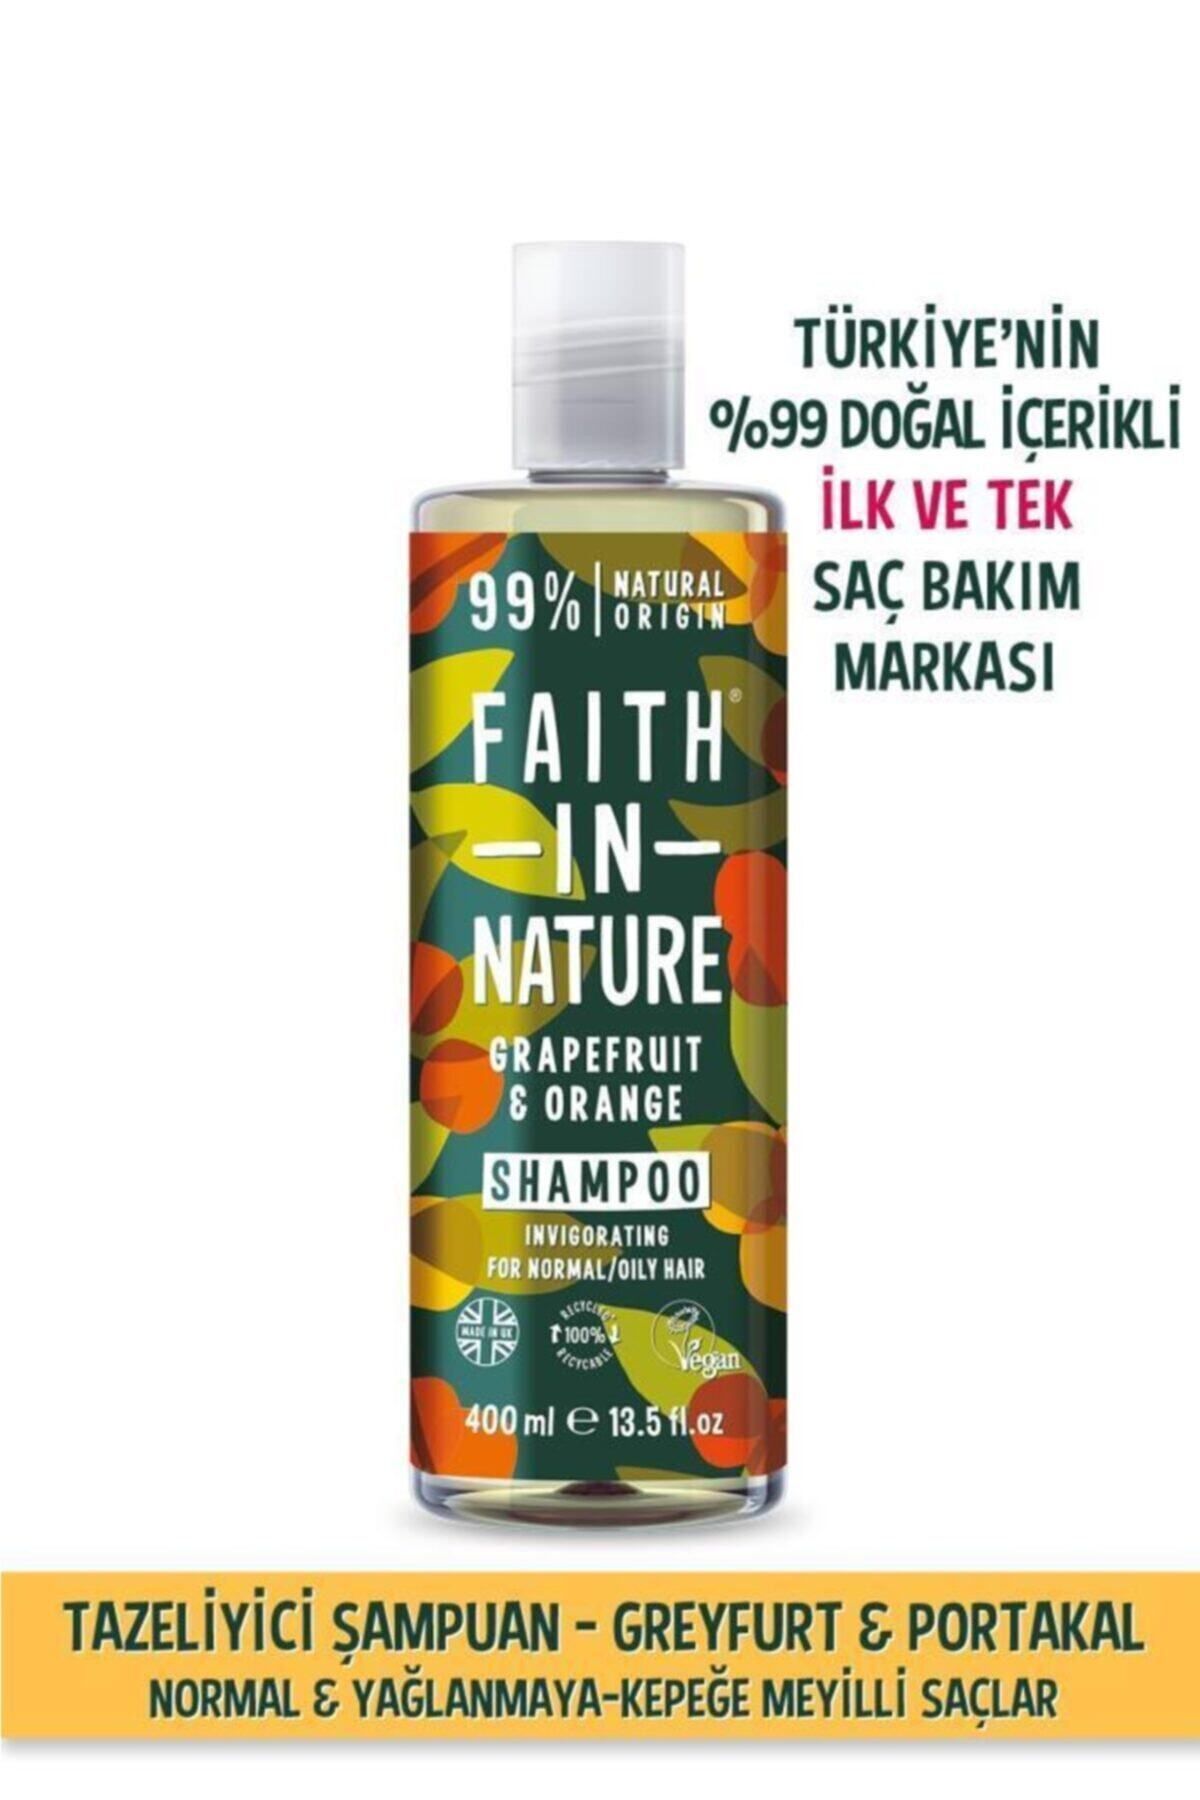 Faith In Nature %99 Doğal Tazeleyici Şampuan Greyfurt&portakal Normal&yağlanmaya-kepeğe Meyilli Saçlar Için